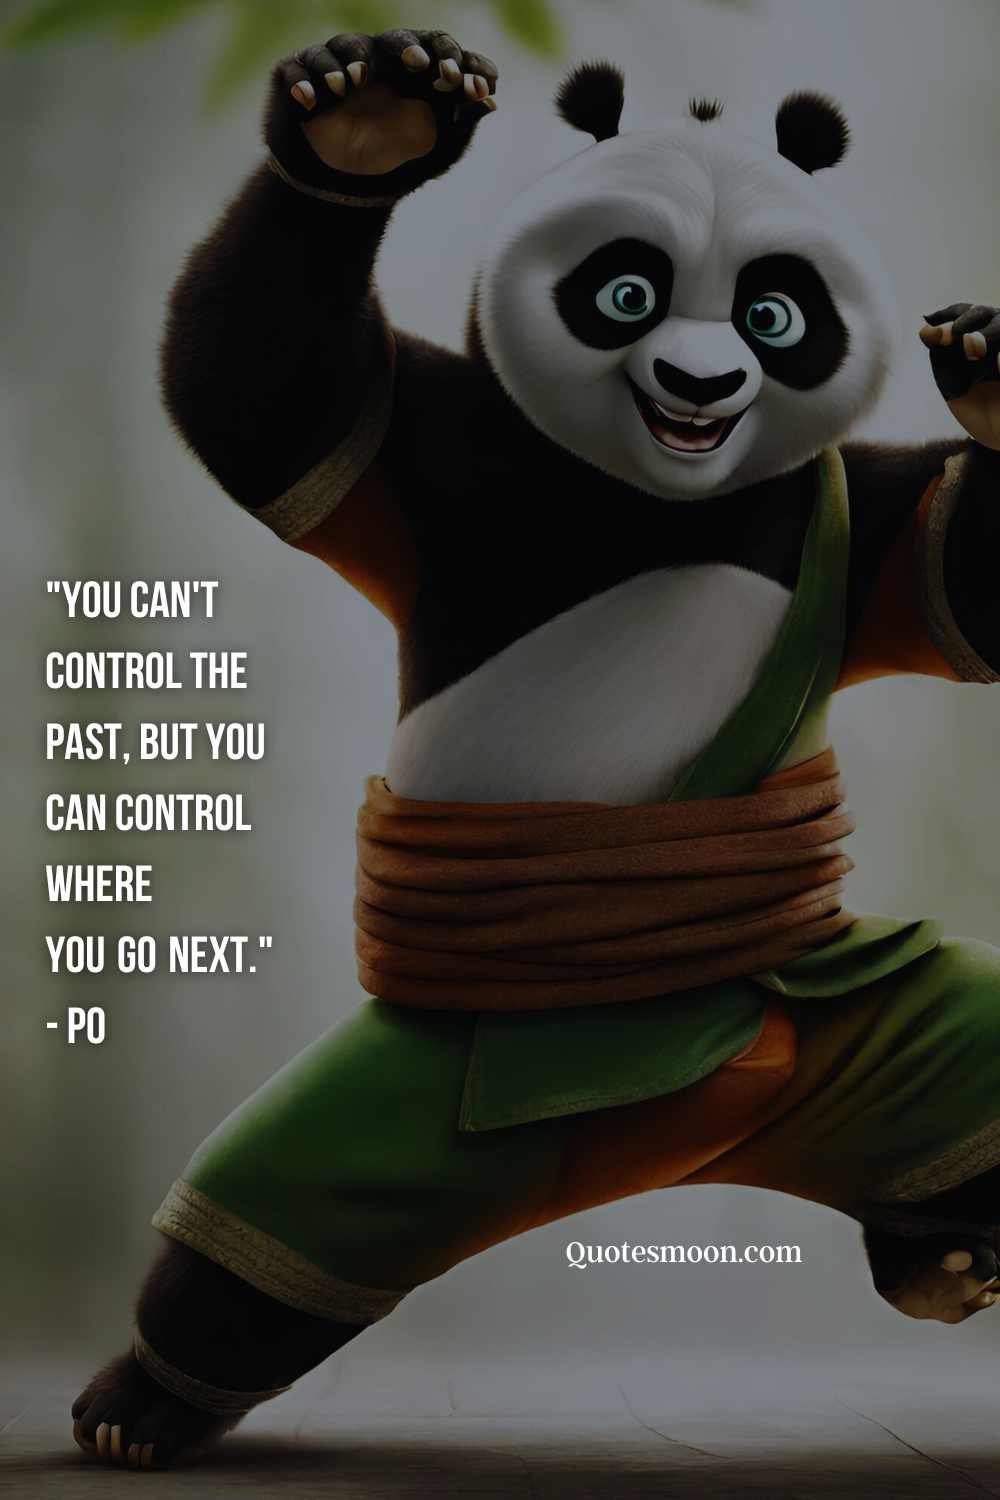 Kung Fu Panda quotes Master Shifu images new